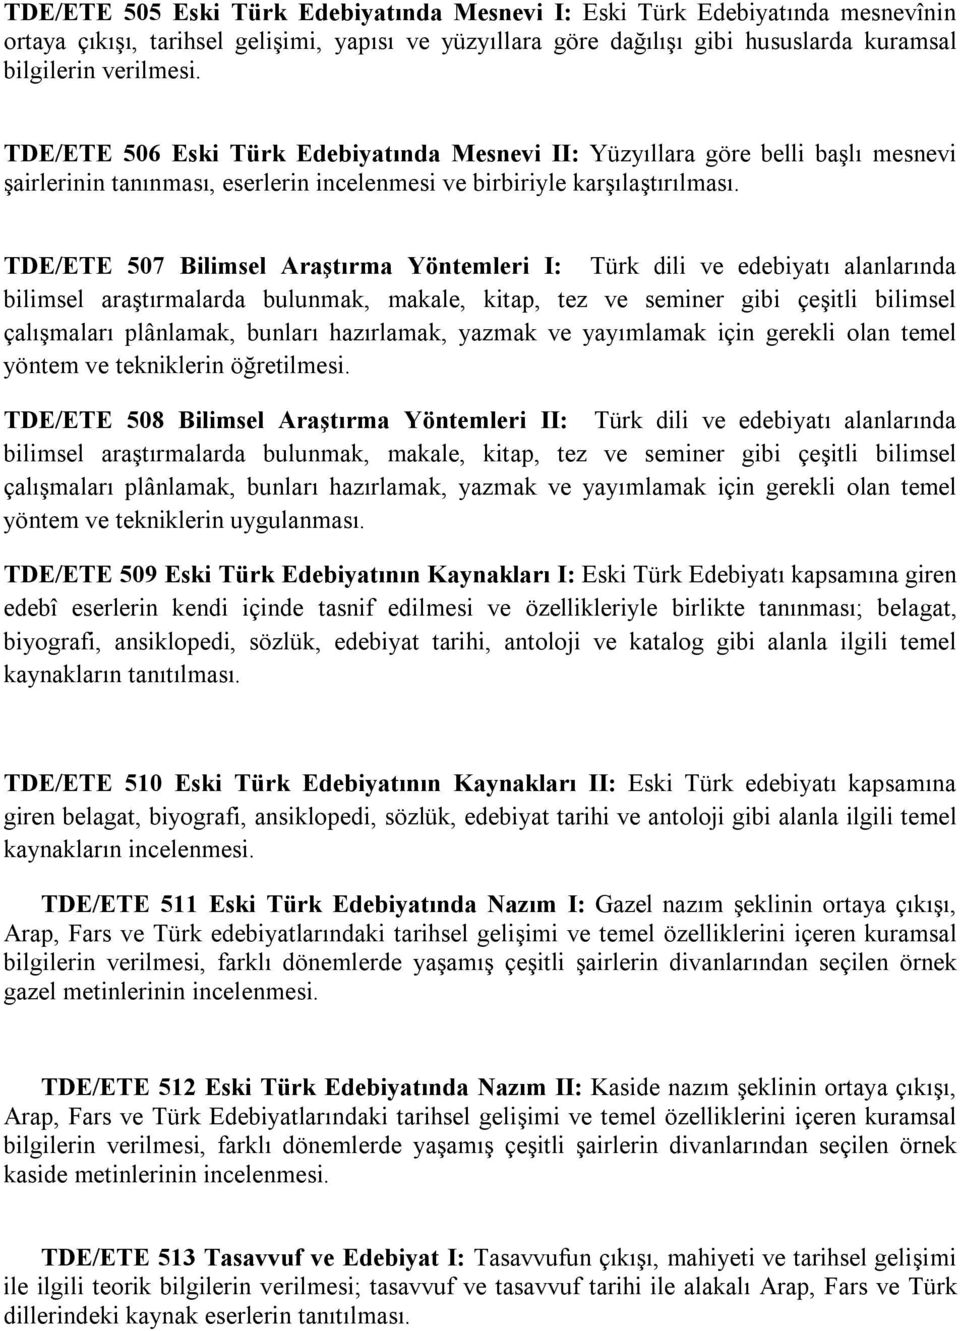 TDE/ETE 507 Bilimsel Araştırma Yöntemleri I: Türk dili ve edebiyatı alanlarında bilimsel araştırmalarda bulunmak, makale, kitap, tez ve seminer gibi çeşitli bilimsel çalışmaları plânlamak, bunları